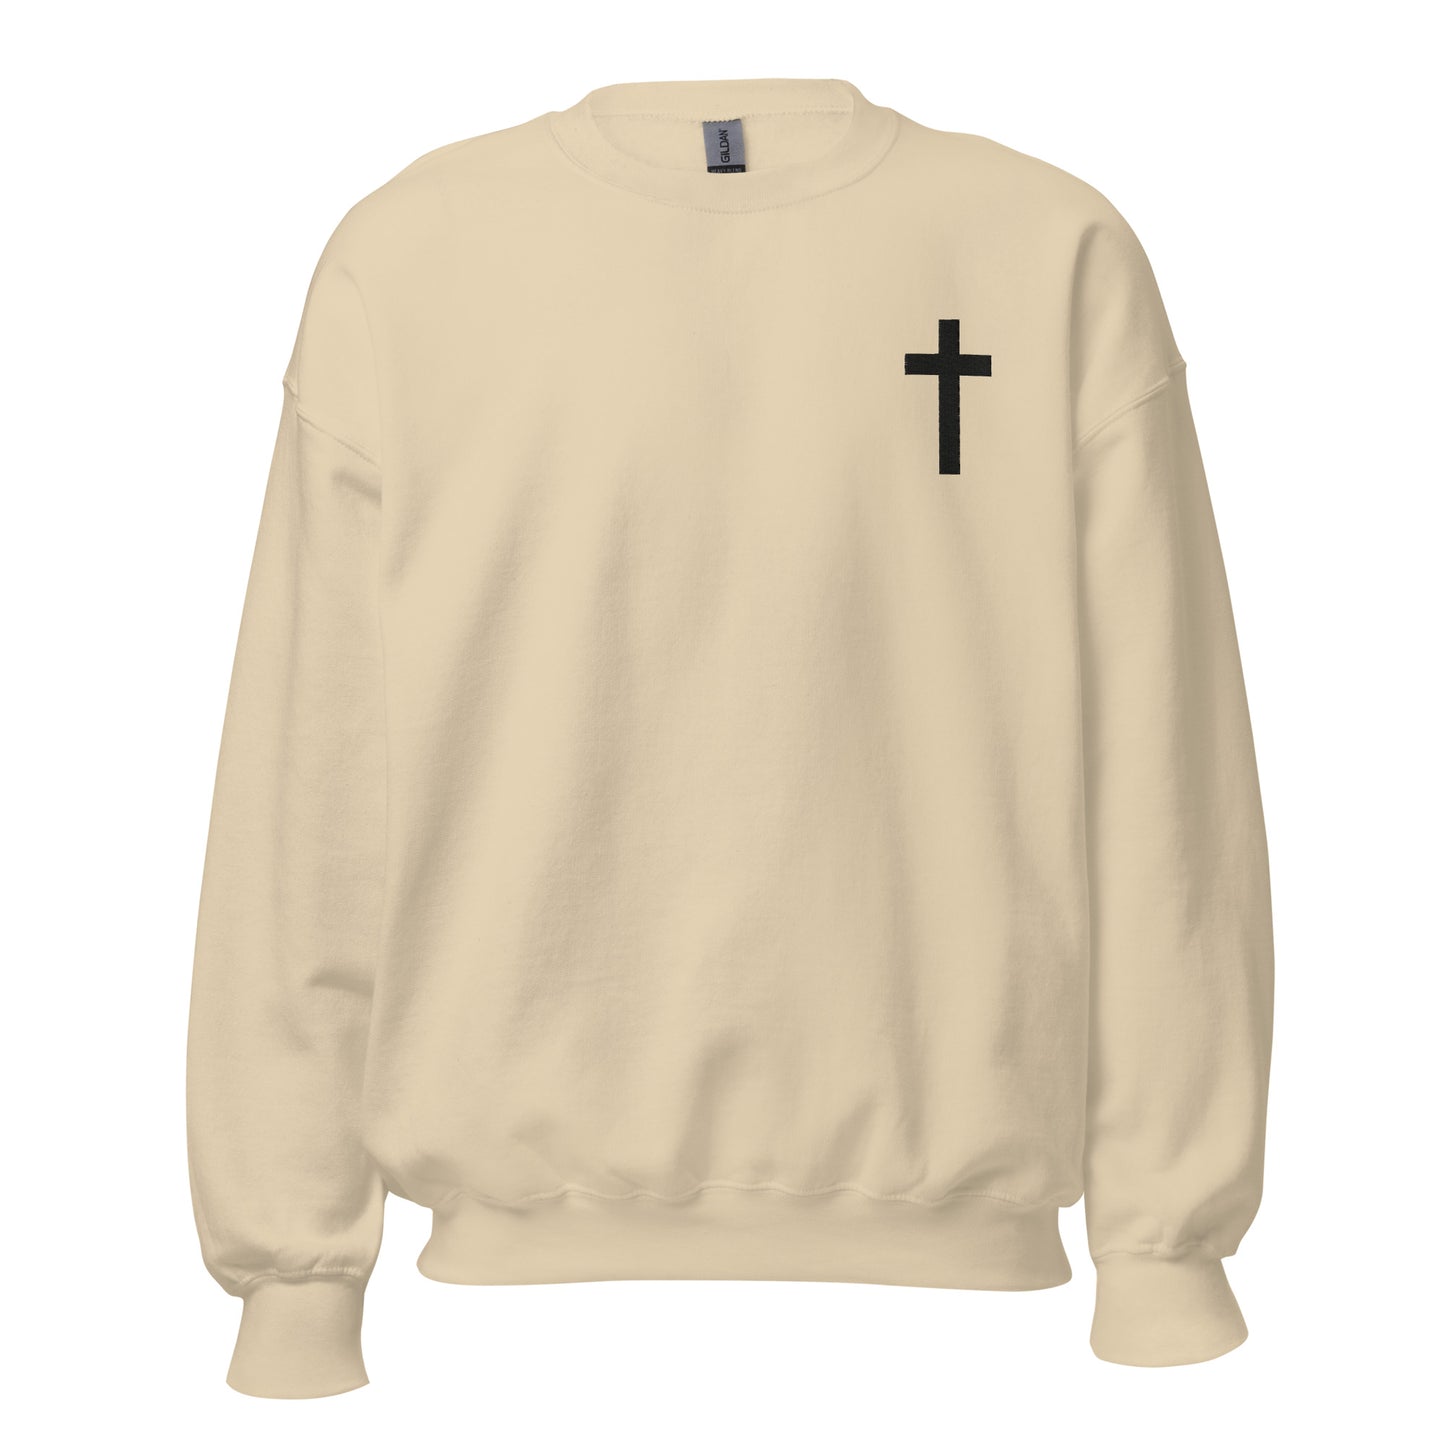 Christian Sweatshirt